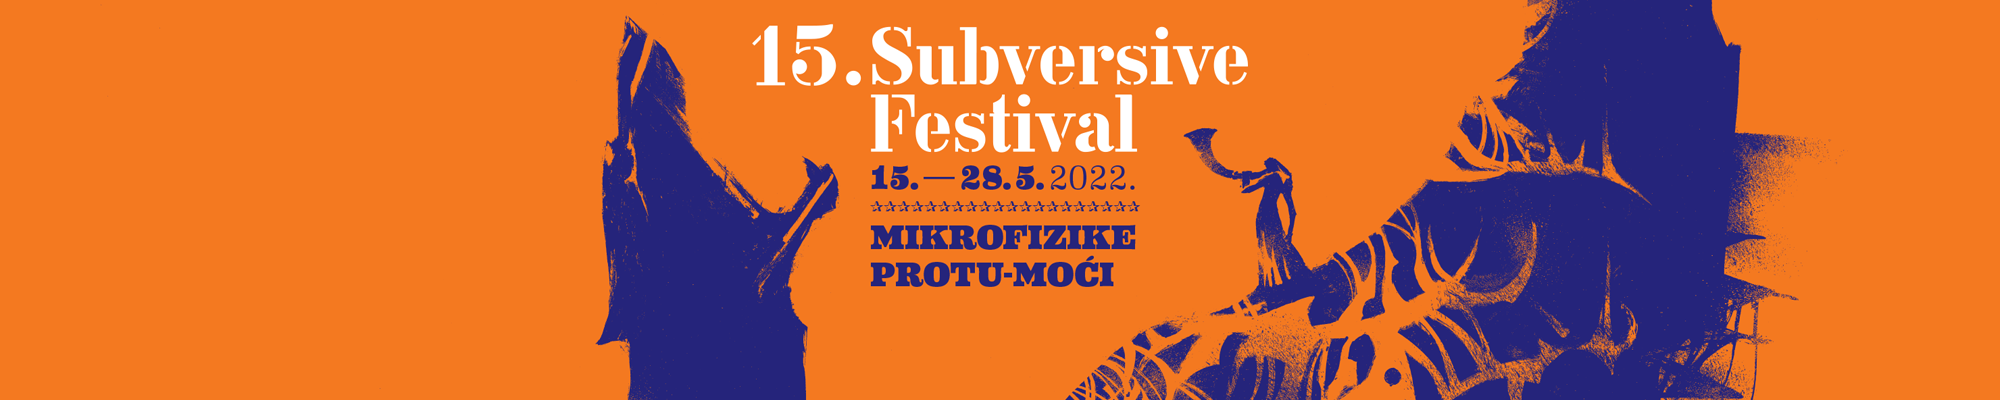 15. Subversive Festival od 15. do 28. svibnja 2022.